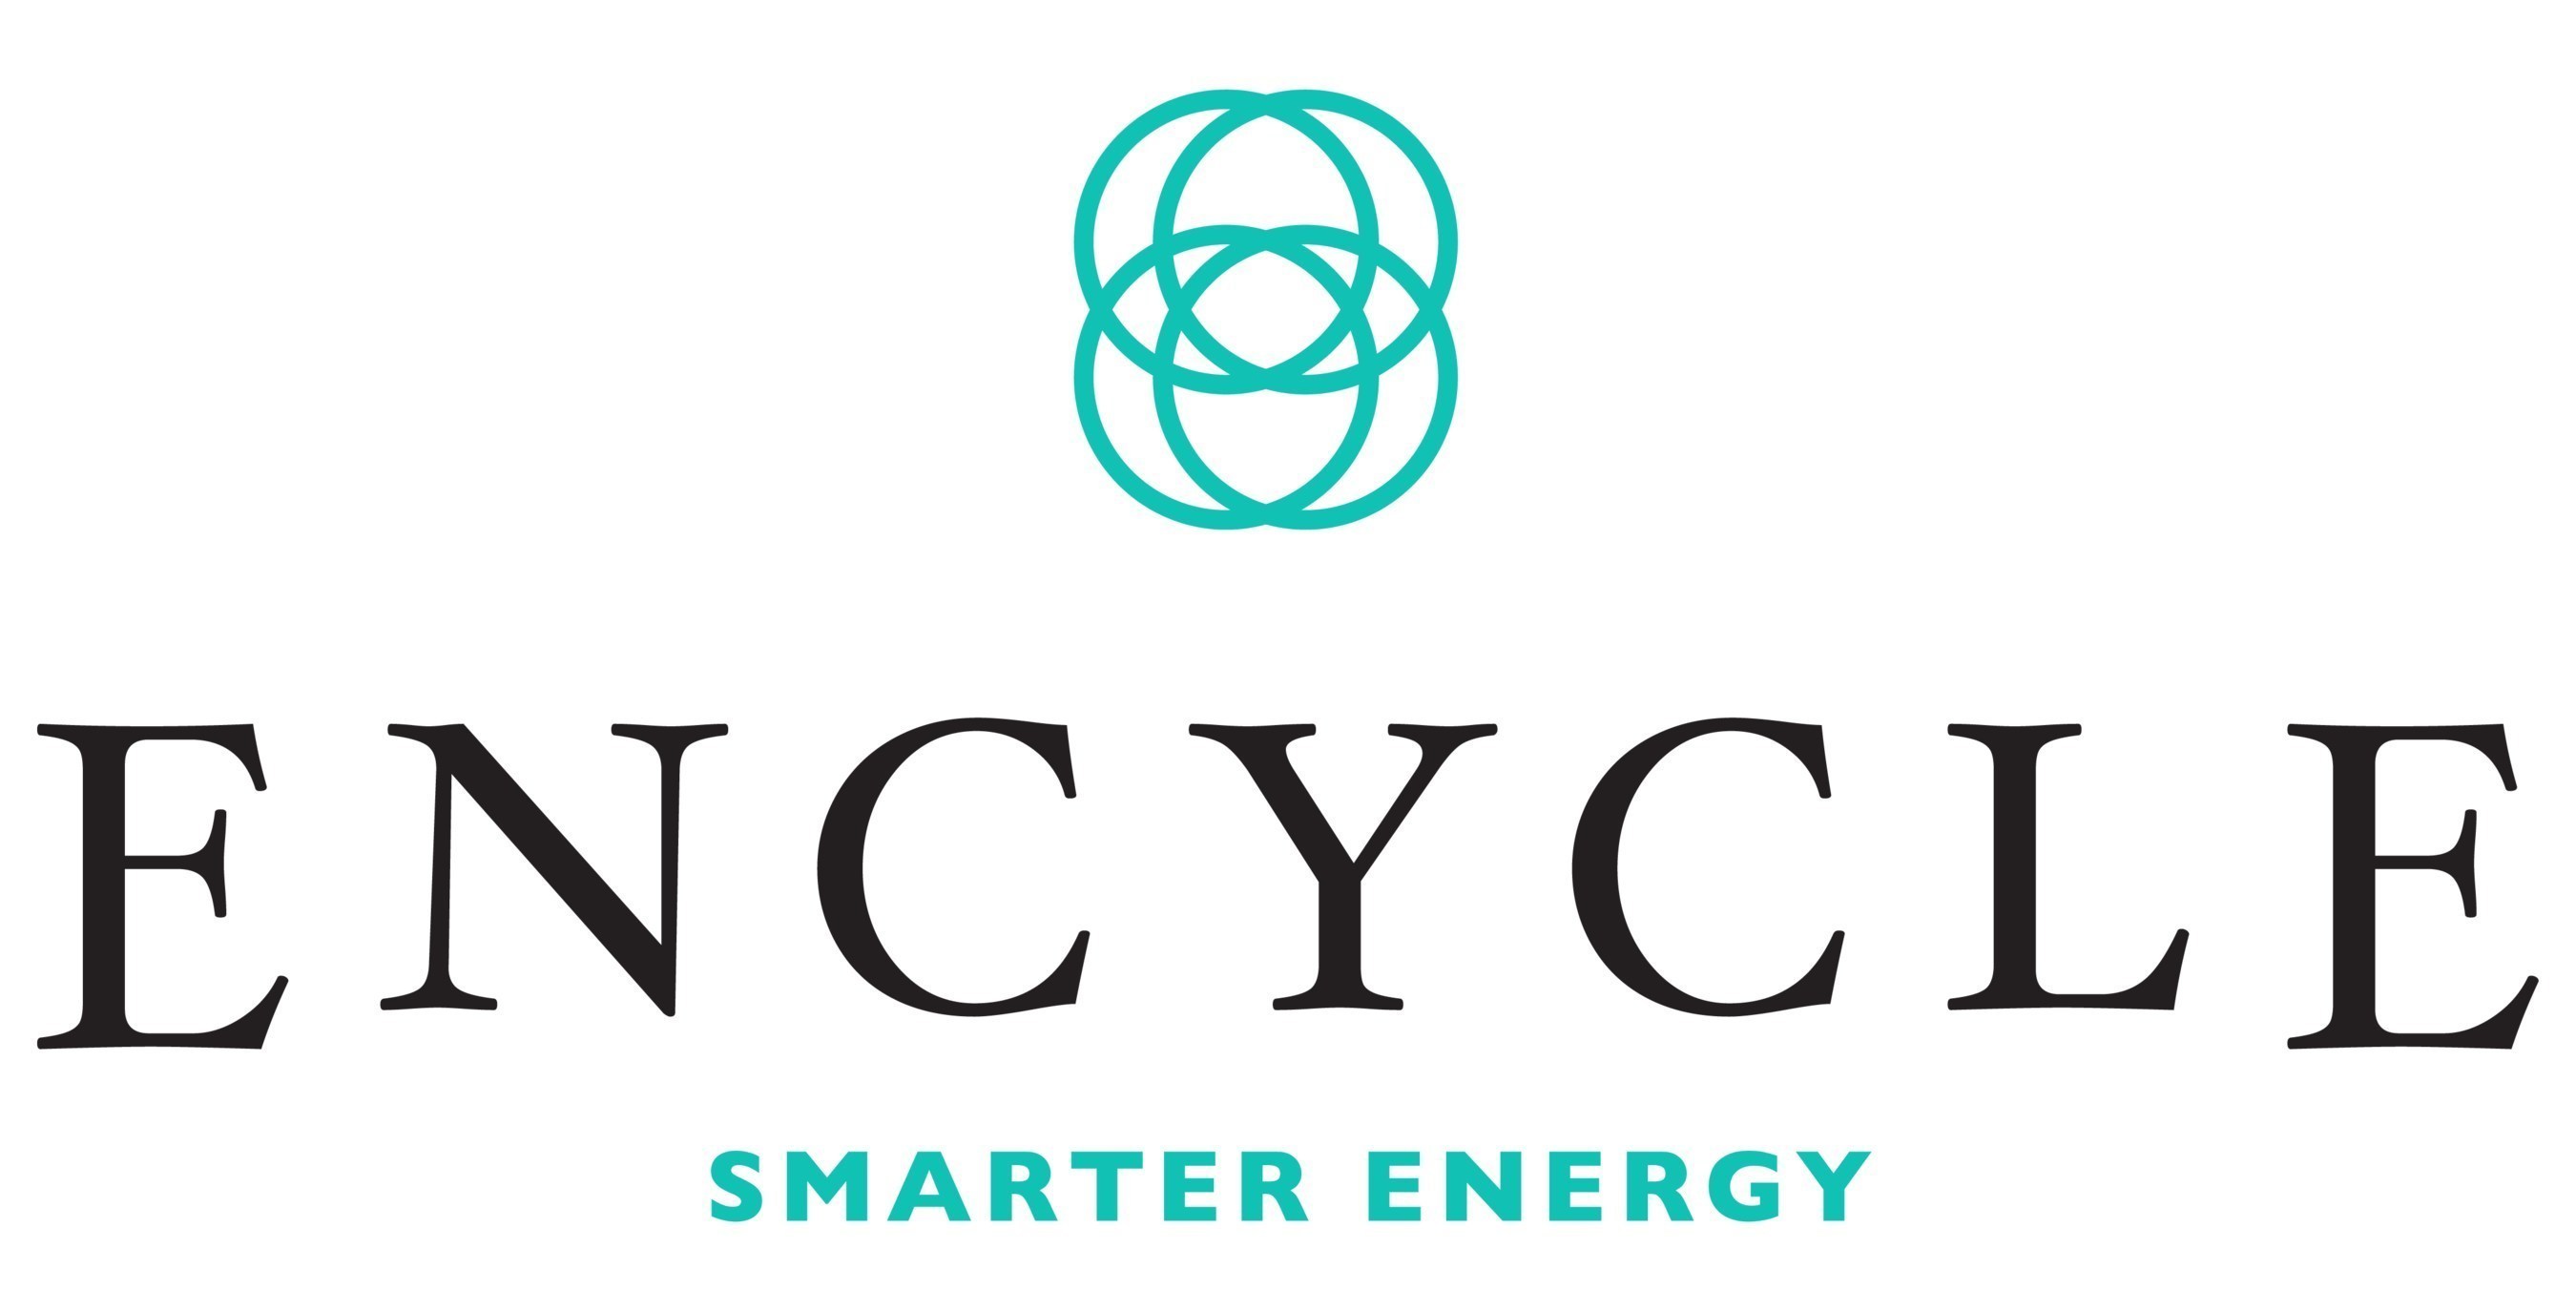 Encycle Logo